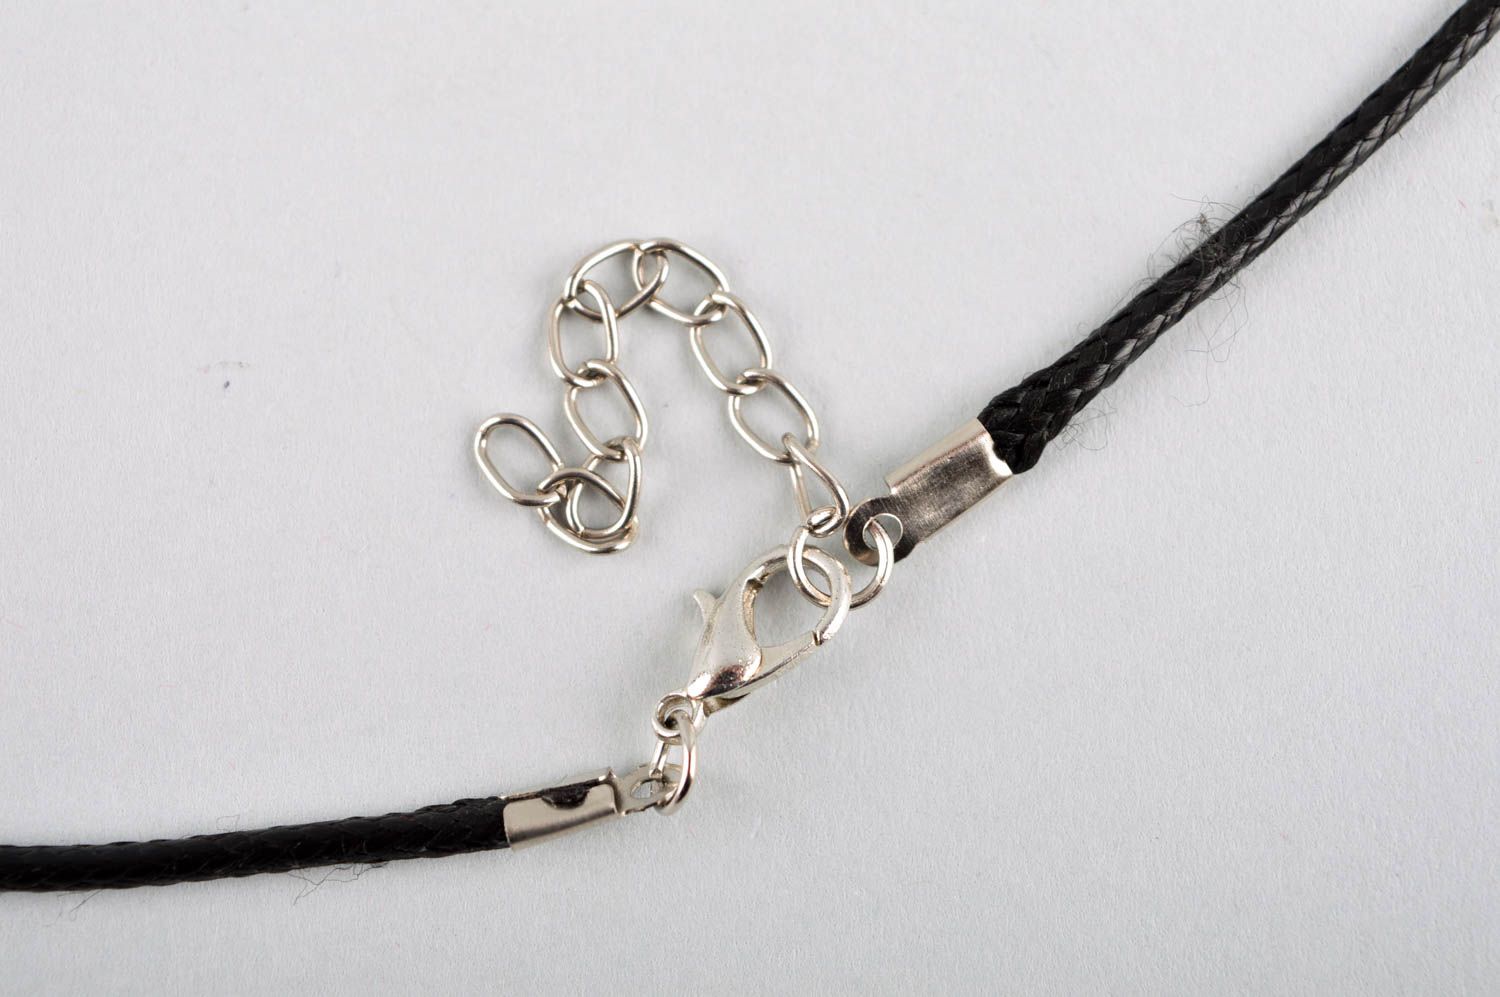 Handmade pendant on cord designer accessories for women glass pendant for women photo 5